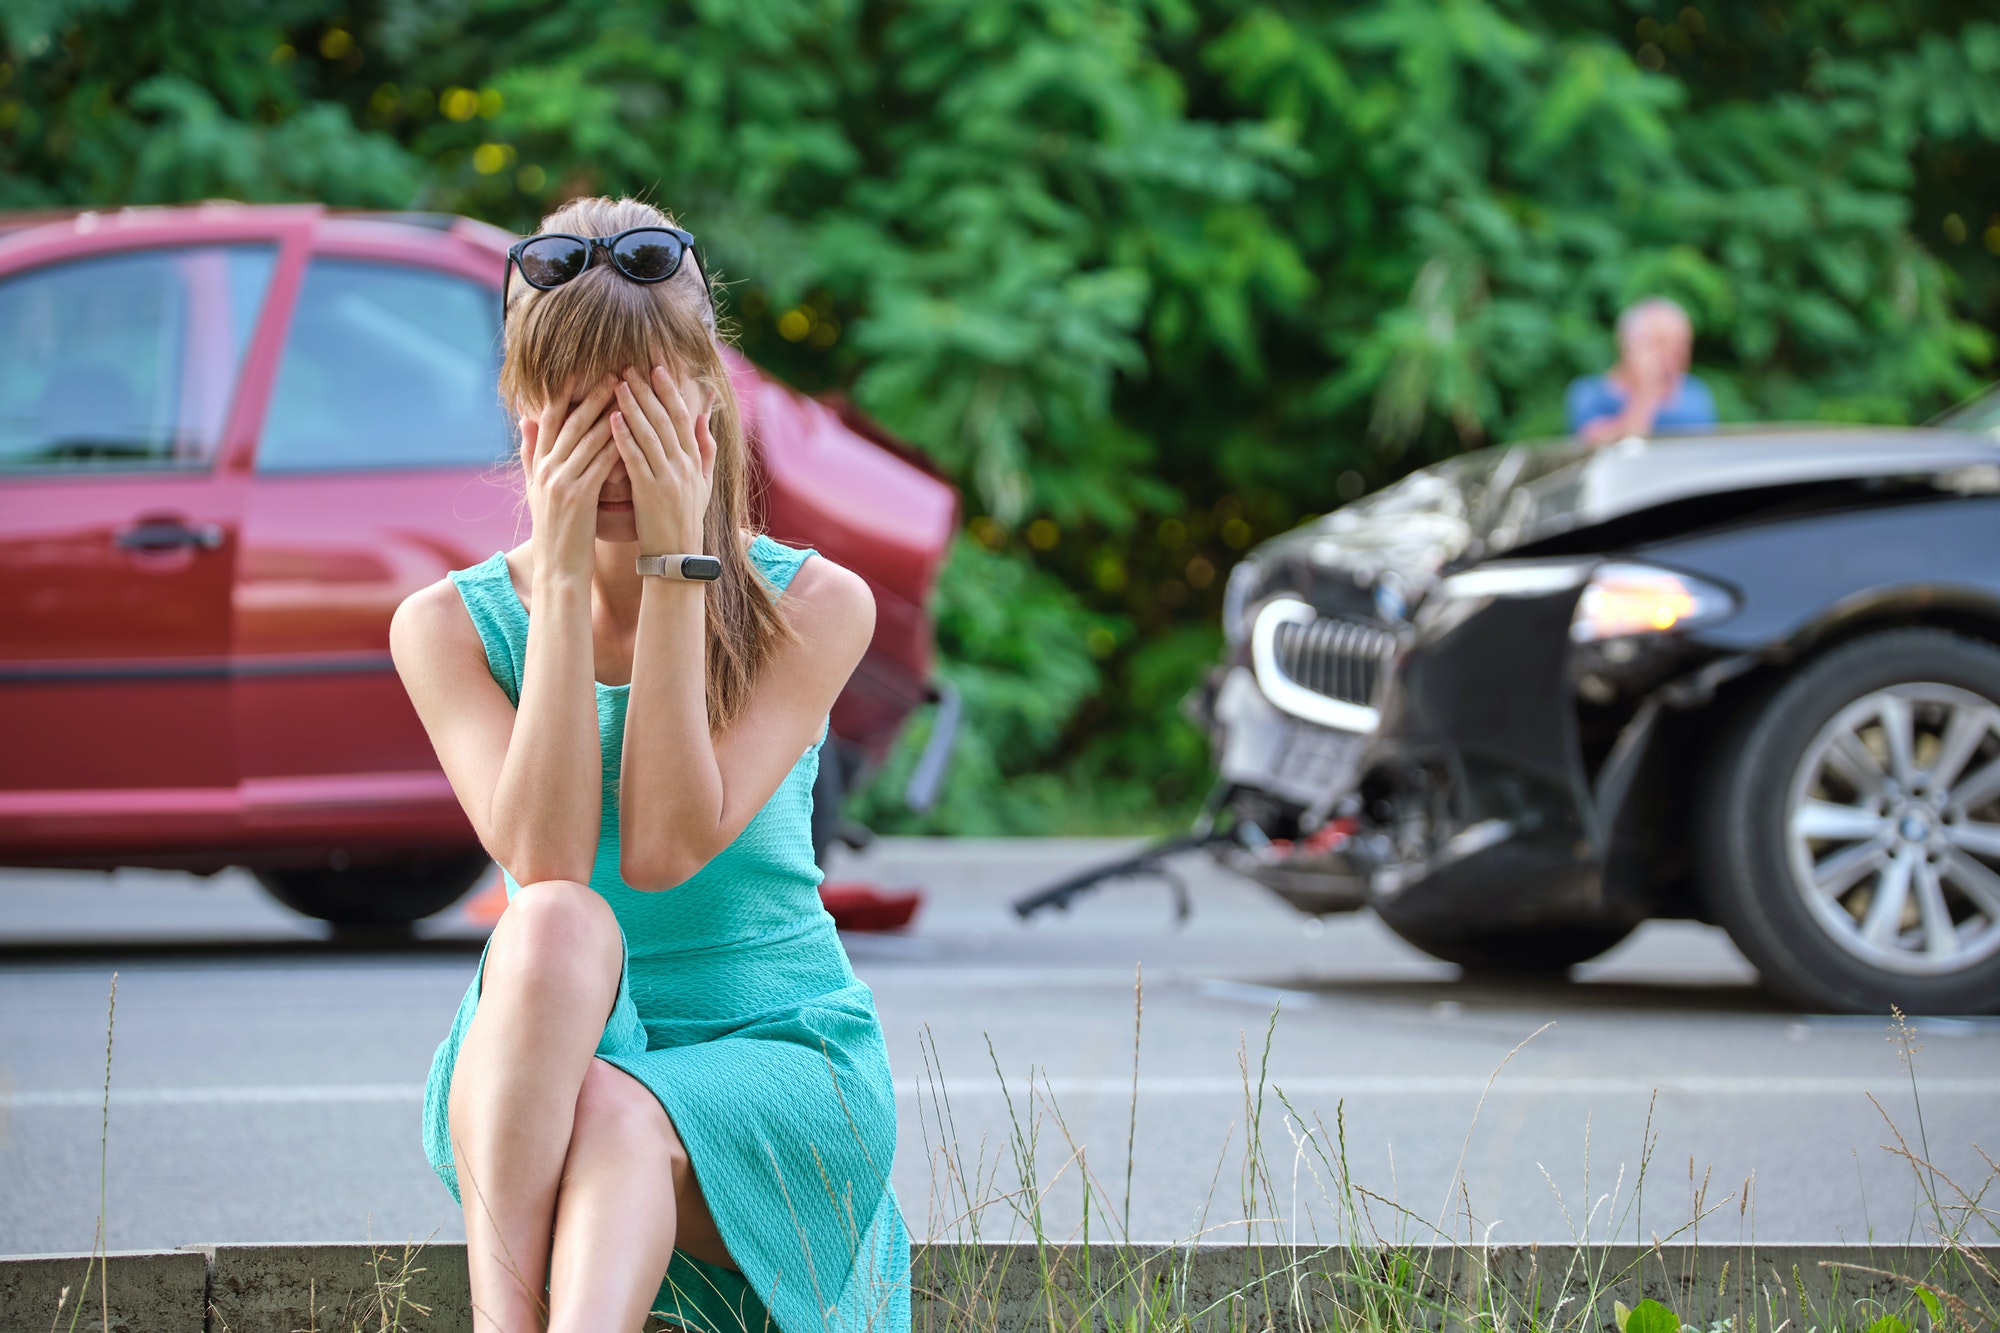 Une conductrice stressée assise côté rue a été choquée après un accident de voiture.